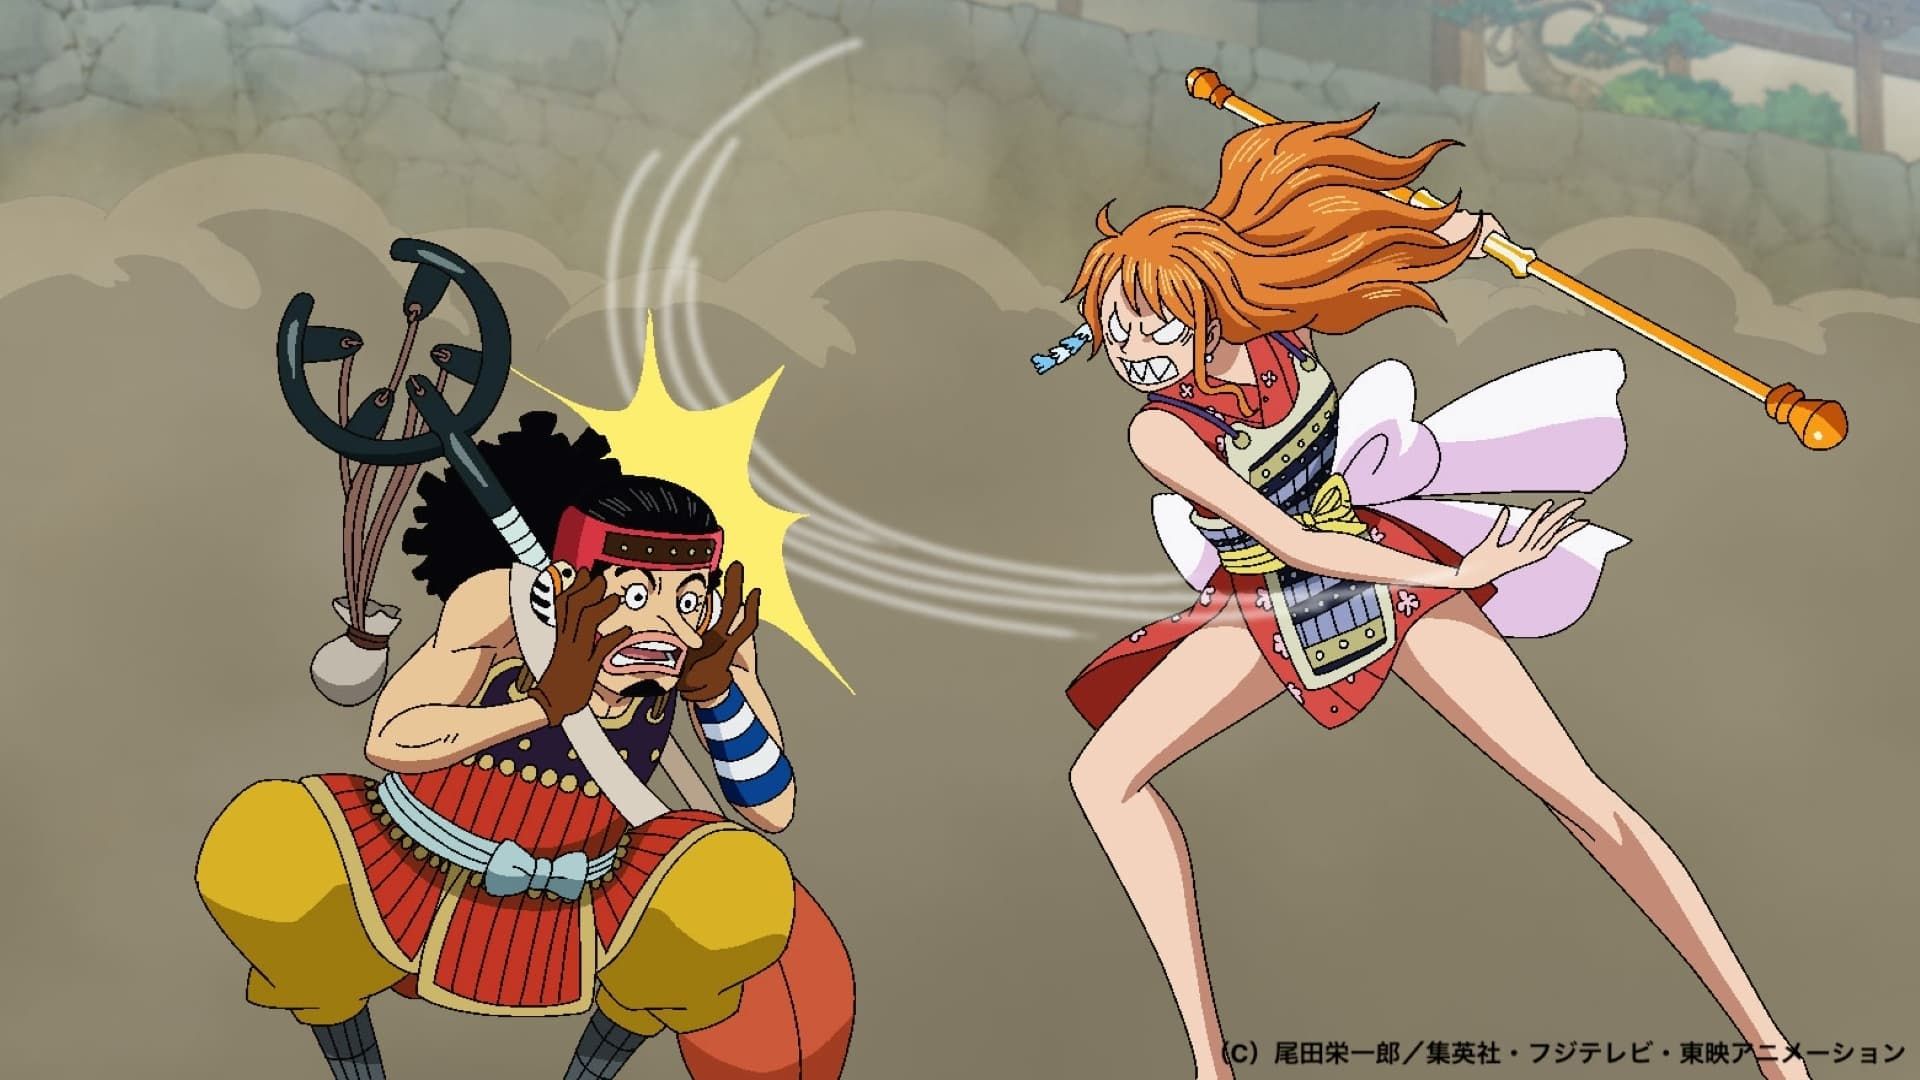 One Piece: Nami Takes the Fight to Kaido's Ulti